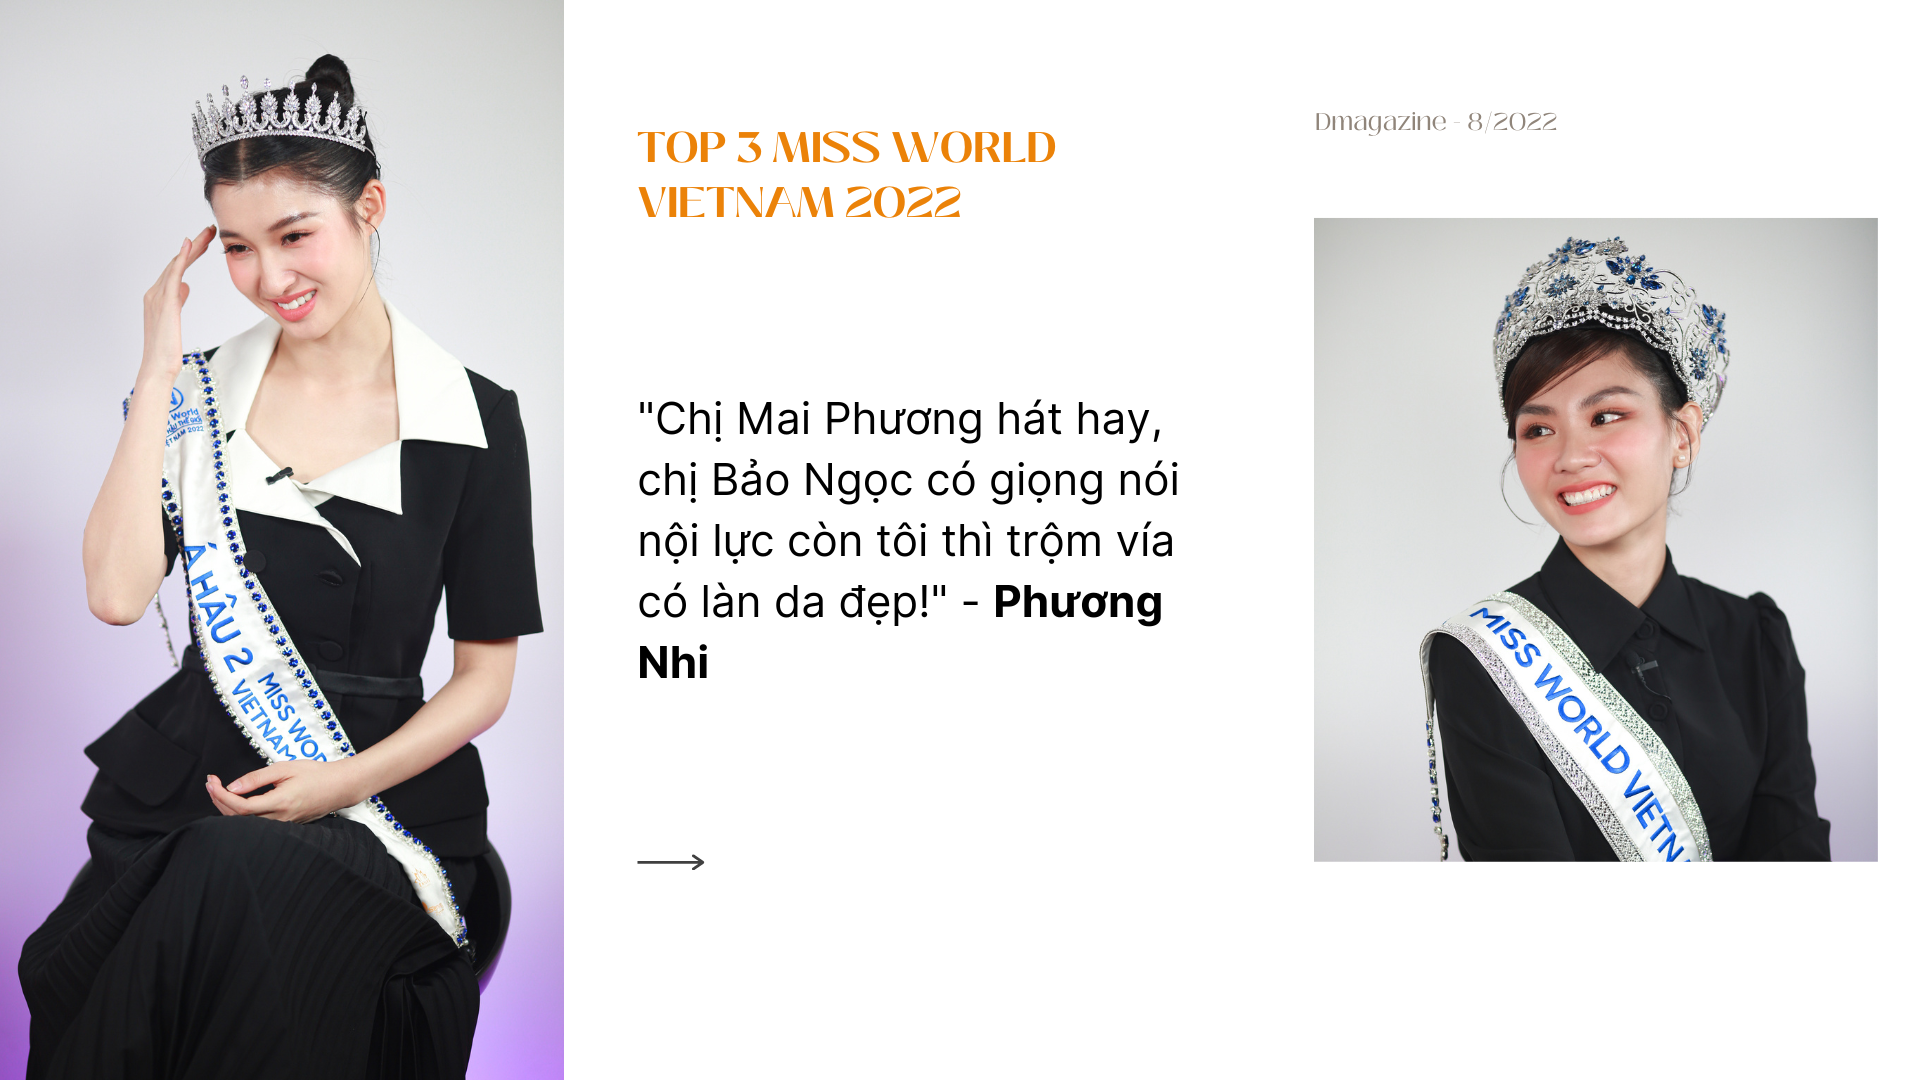 Top 3 Miss World Vietnam hé lộ gu bạn trai, nói gì về sự cố rơi vương miện? - 5